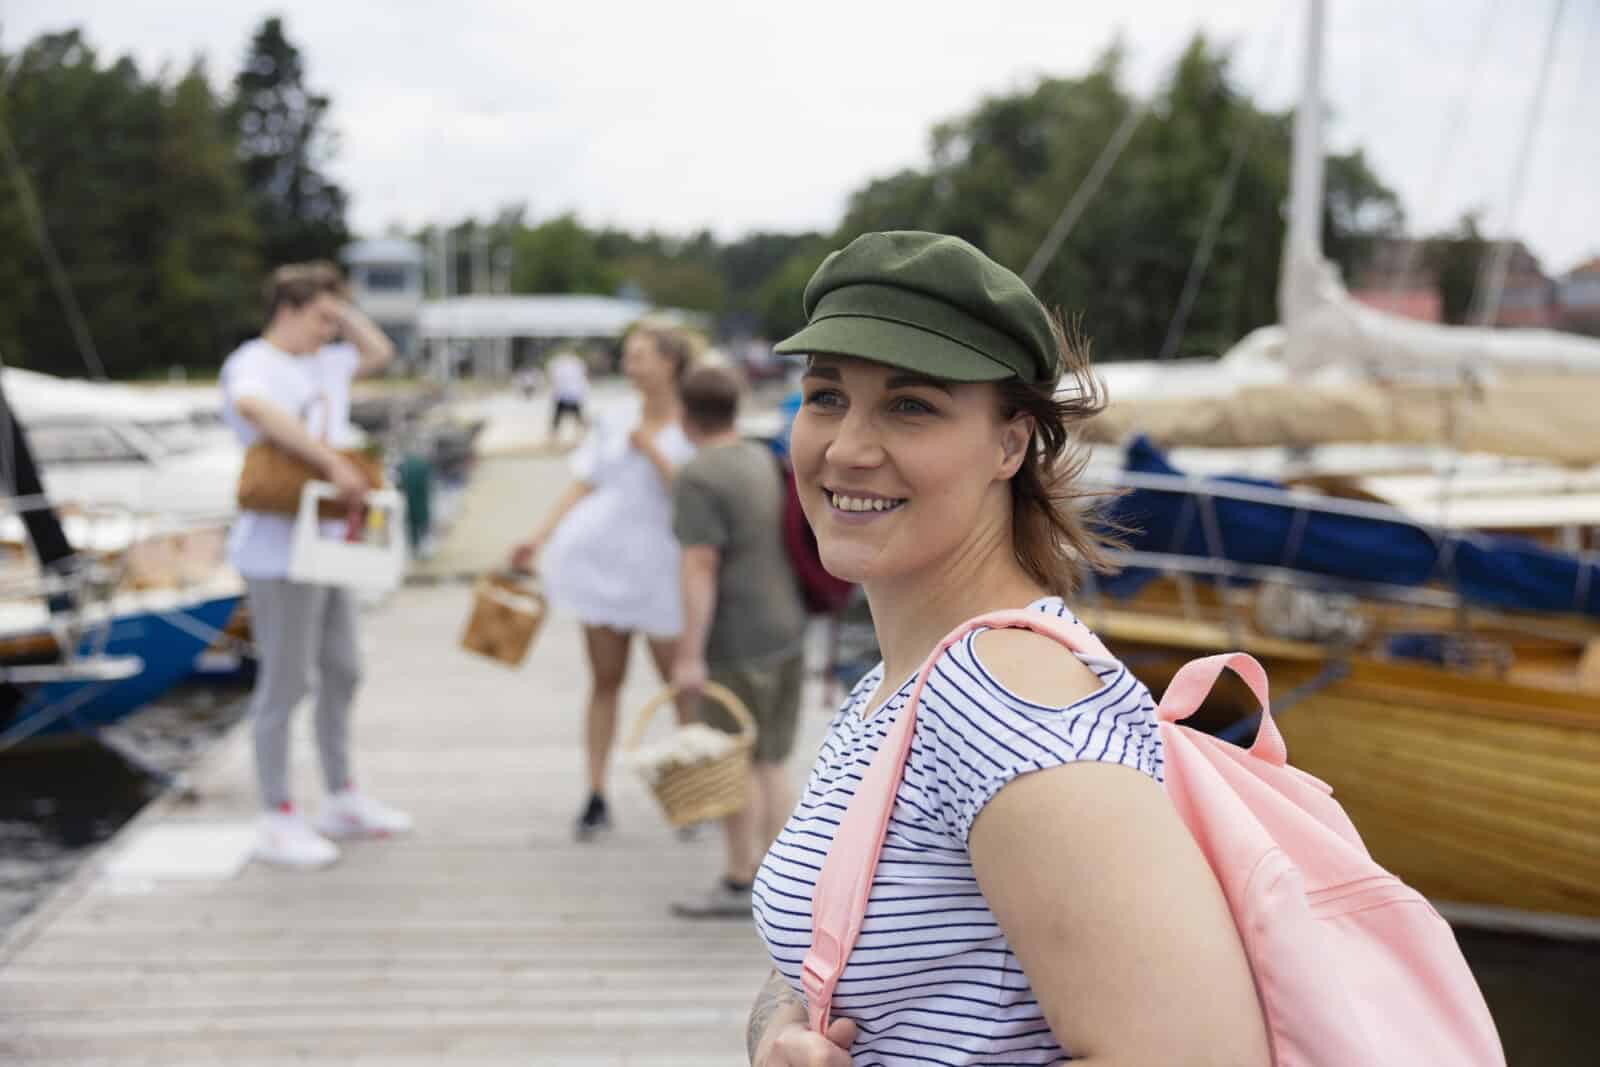 Vihreään lakkiin pukeutunut nuori nainen seisoo laiturilla vaaleanpunainen reppu olallaan. Taustalla näkyy veneitä ja ihmisiä eväskorit kädessään.